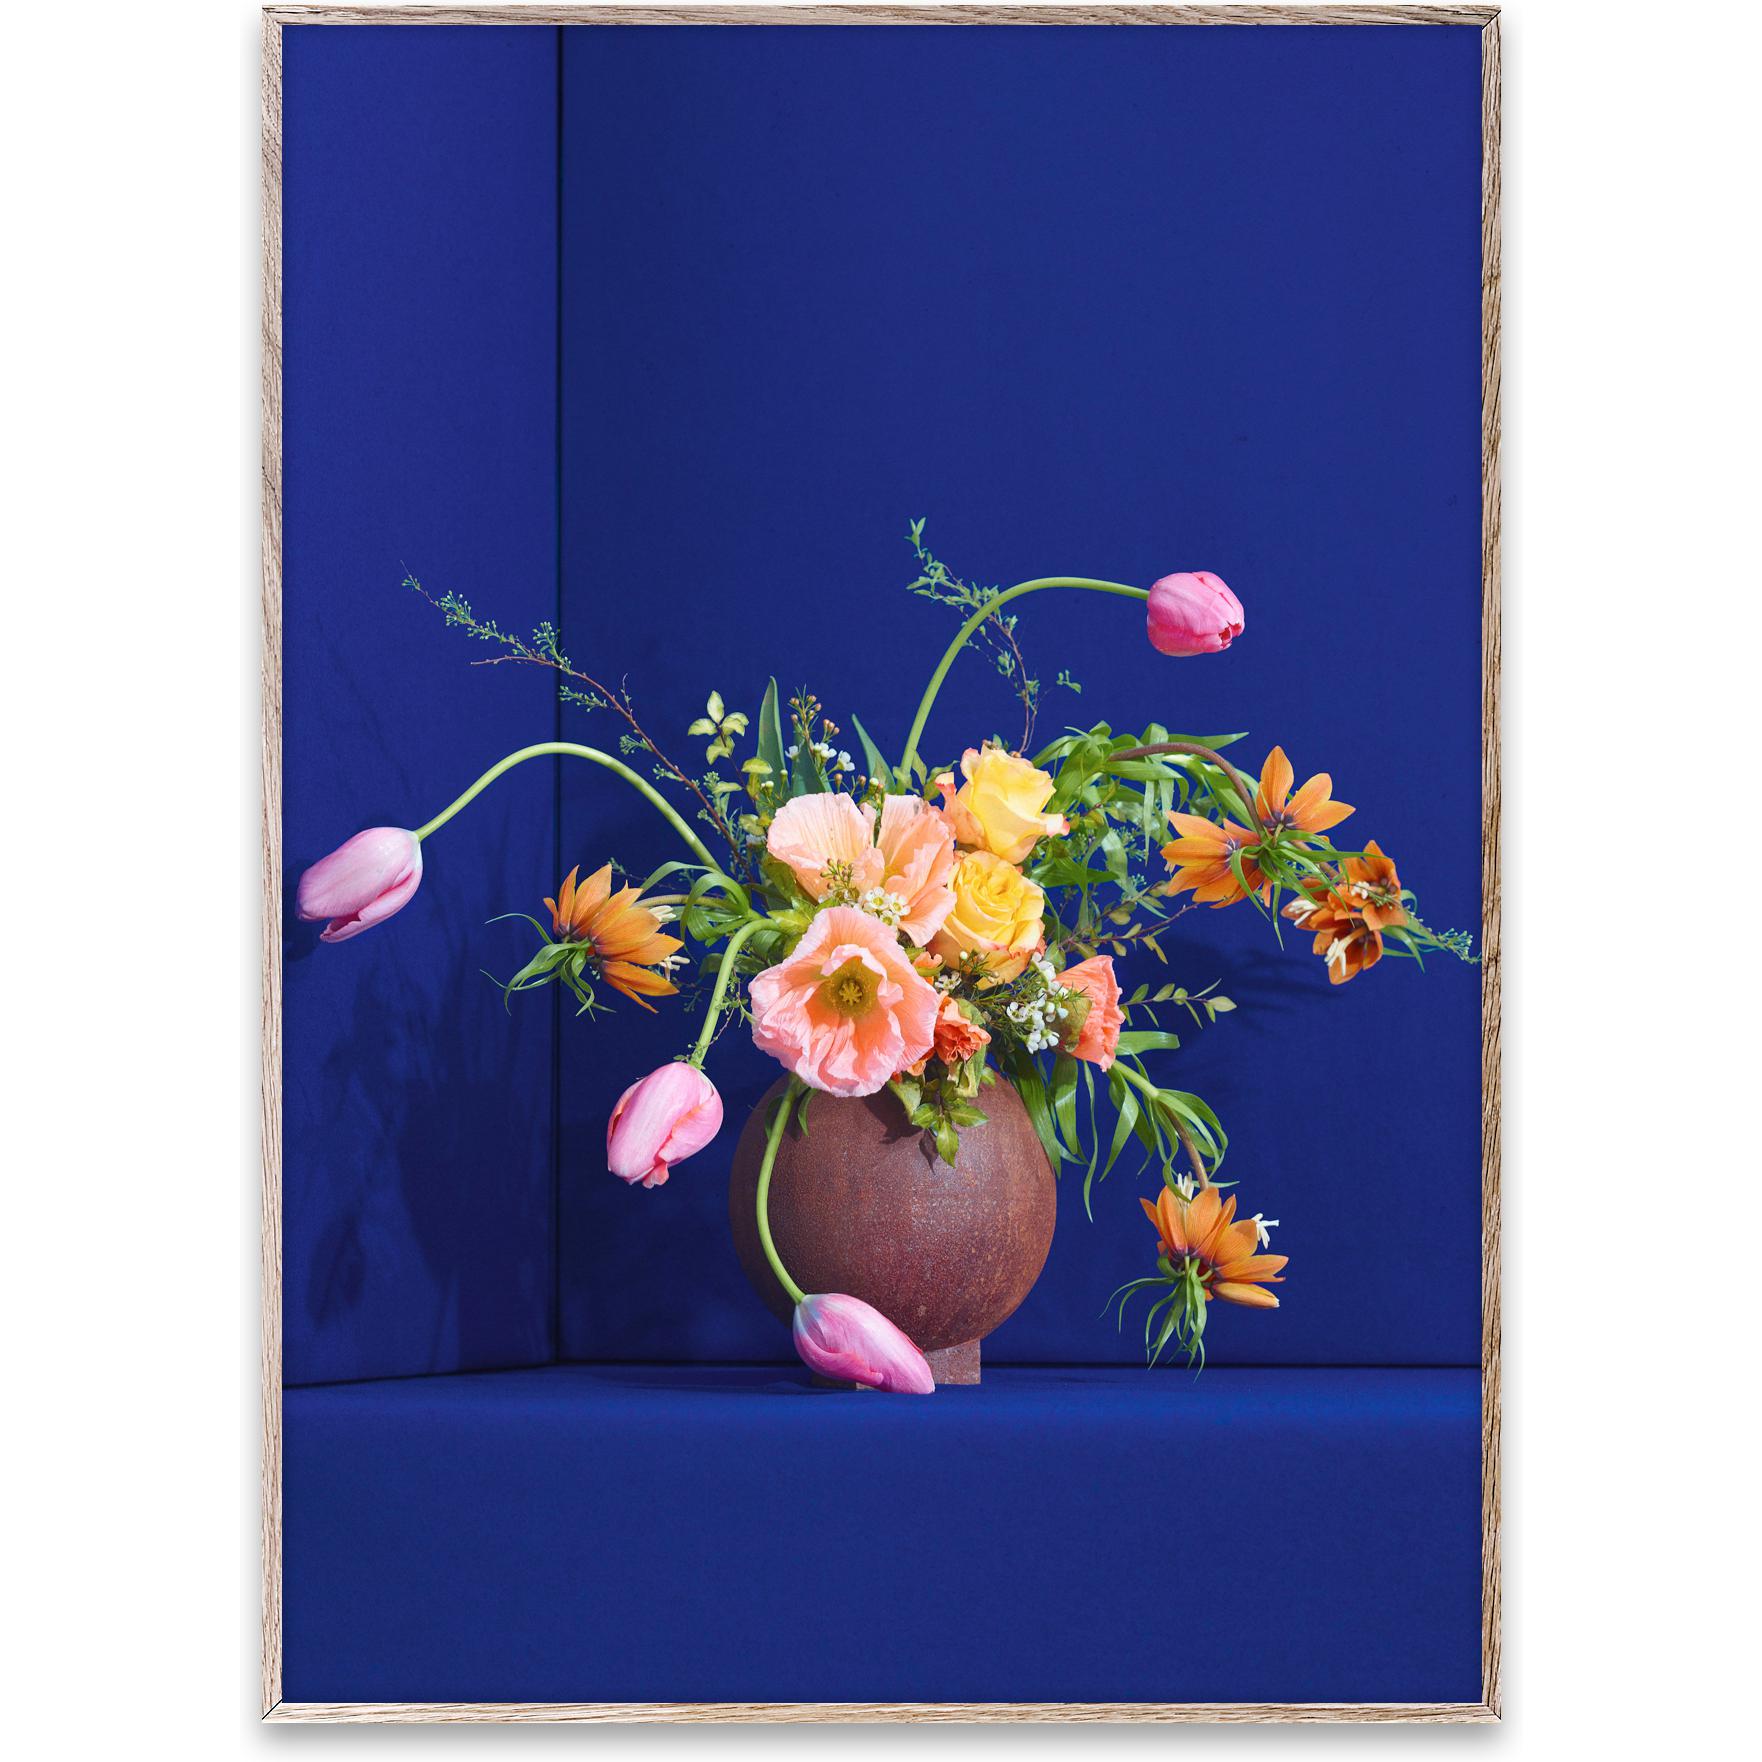 Paper Collective Blomst 01 Affiche 50x70 cm, bleu